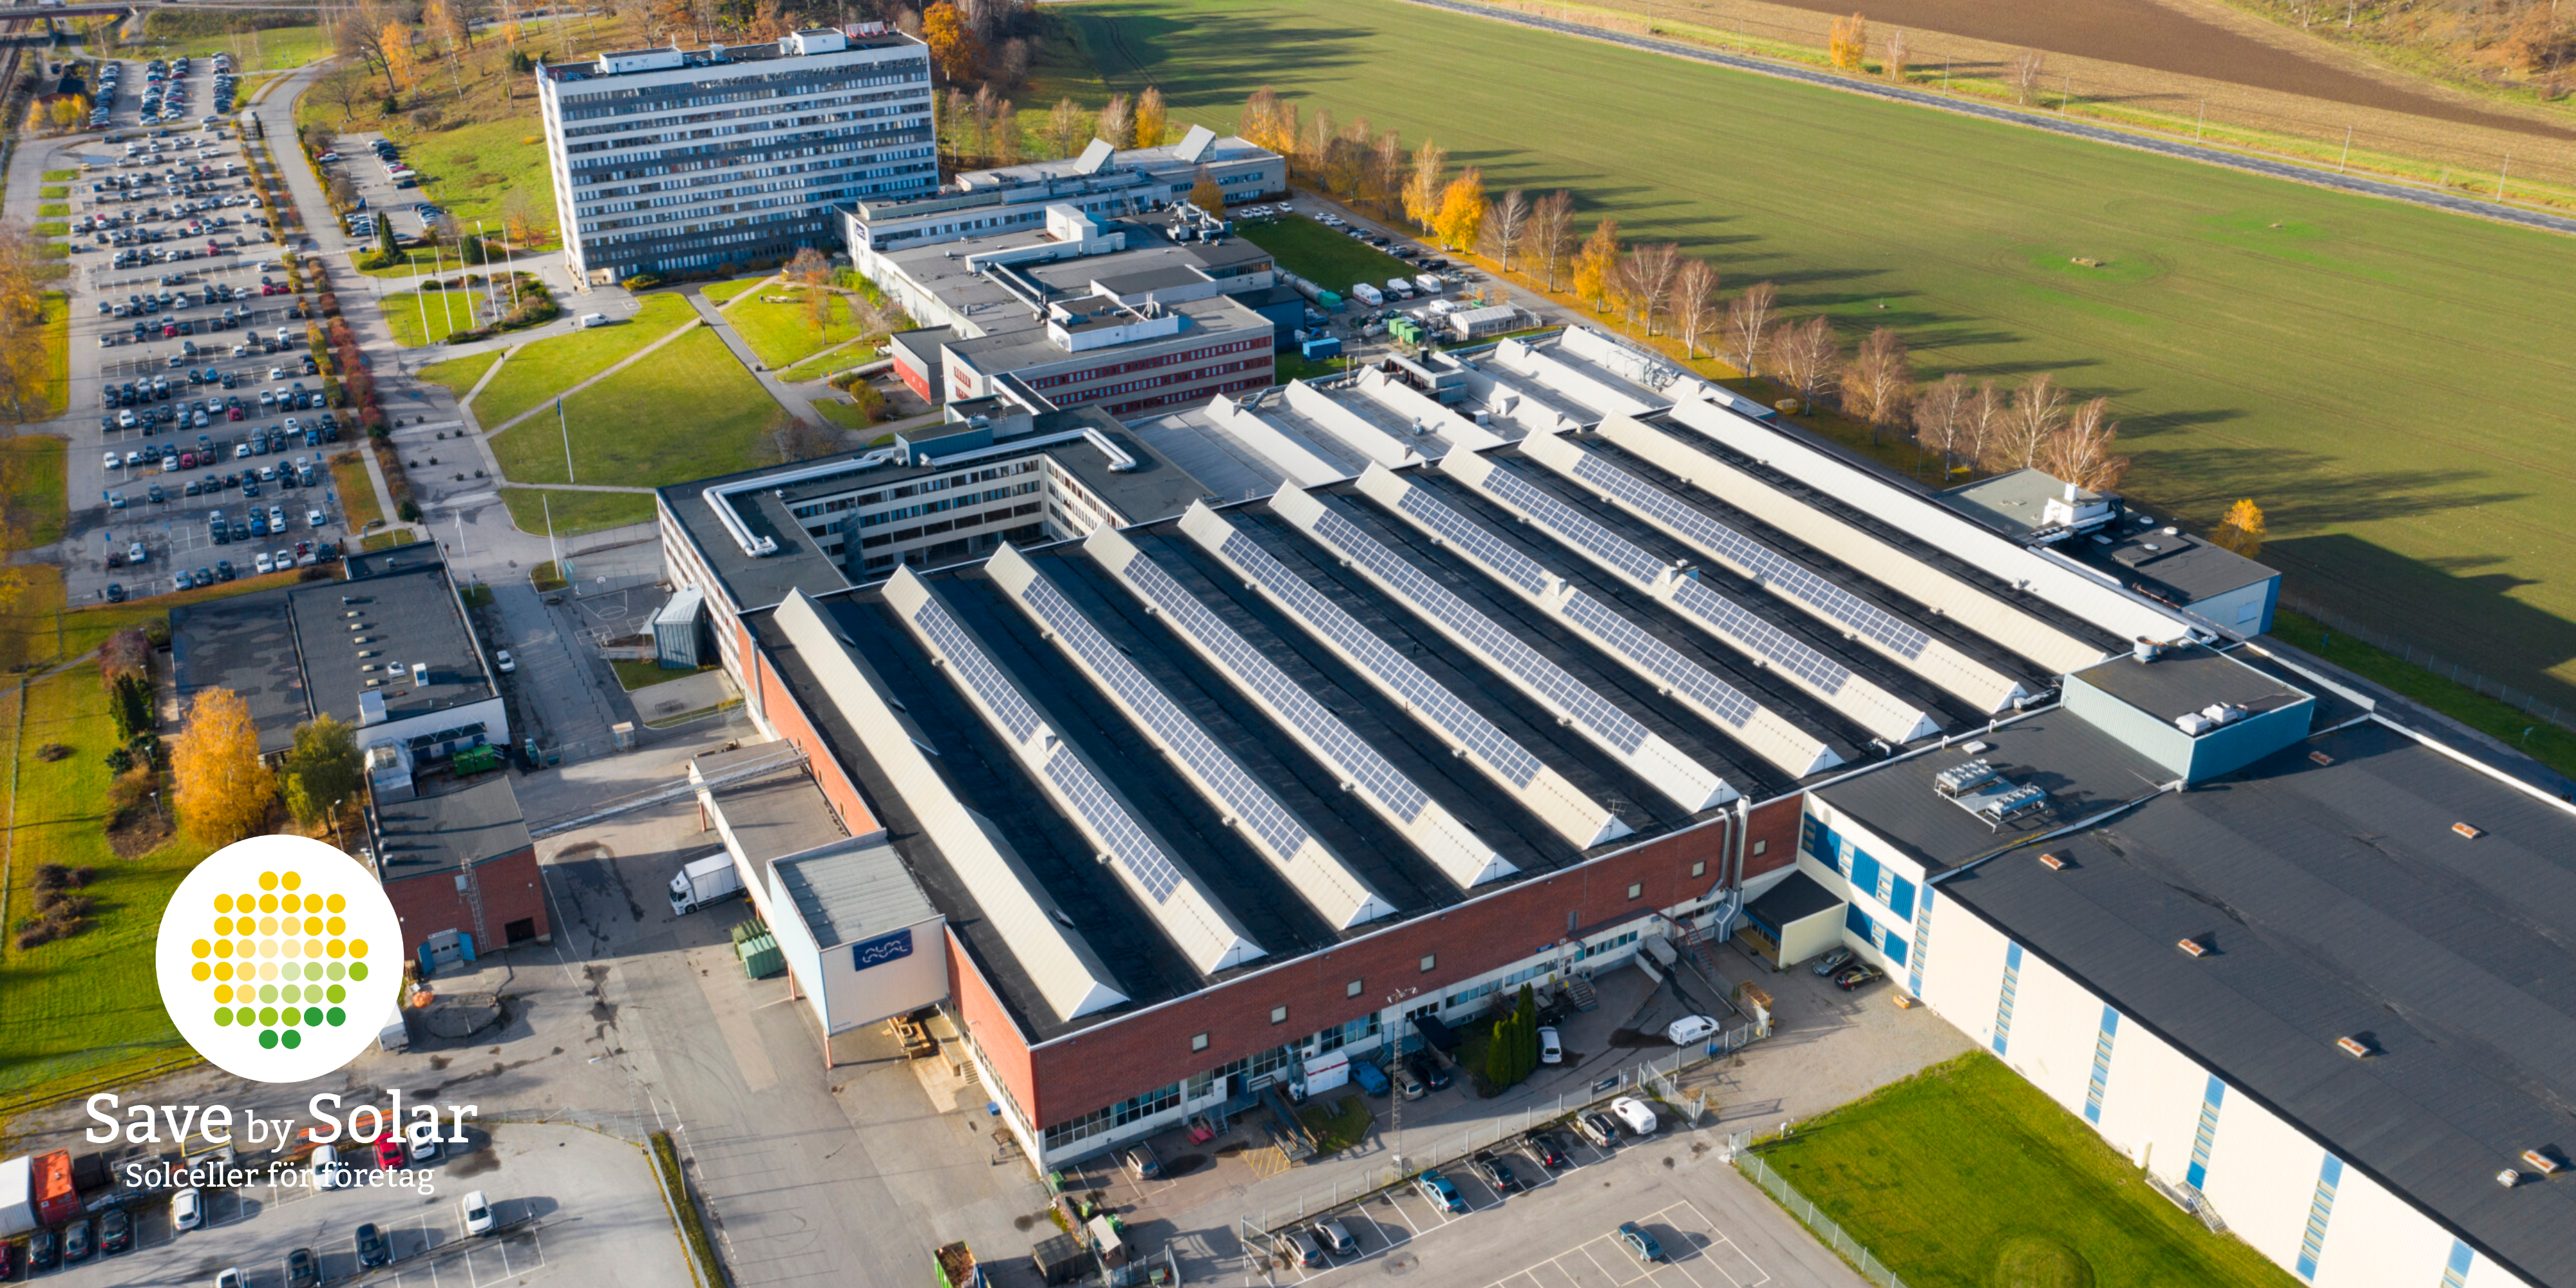 Profi Fastigheter satsar på solceller, och utvecklar en av Sveriges mest effektiva anläggningar i den här storleken tillsammans med Save by Solar.